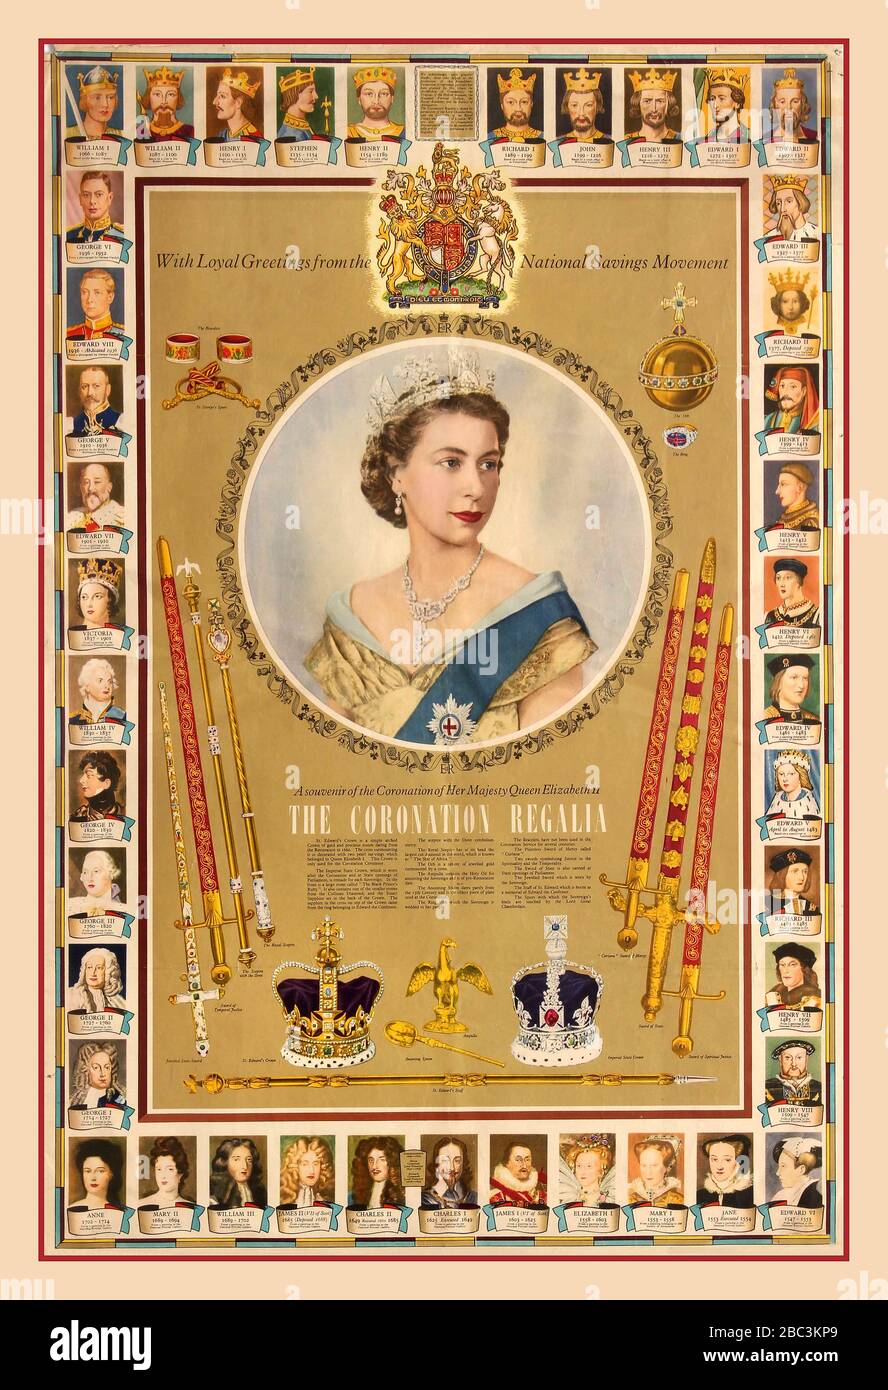 COURONNEMENT AFFICHE RÉGALIA Vintage 1950s affiche d'information britannique publiée par le Comité national des économies en souvenir du couronnement de sa Majesté la reine Elizabeth II - The Coronation Regalia, on 2 juin 1953. L'affiche présente un portrait de sa Majesté la reine Elizabeth II avec des portraits de tous ses prédécesseurs historiques présentés comme une frise sur les bords de l'affiche. L'affiche montre également les deux couronnes, épées, épées, bracelets, l'anneau, L'Orbe, le Sceptre et le personnel que la Reine a reçu pendant la cérémonie de couronnement. 2 juin 1953. Banque D'Images